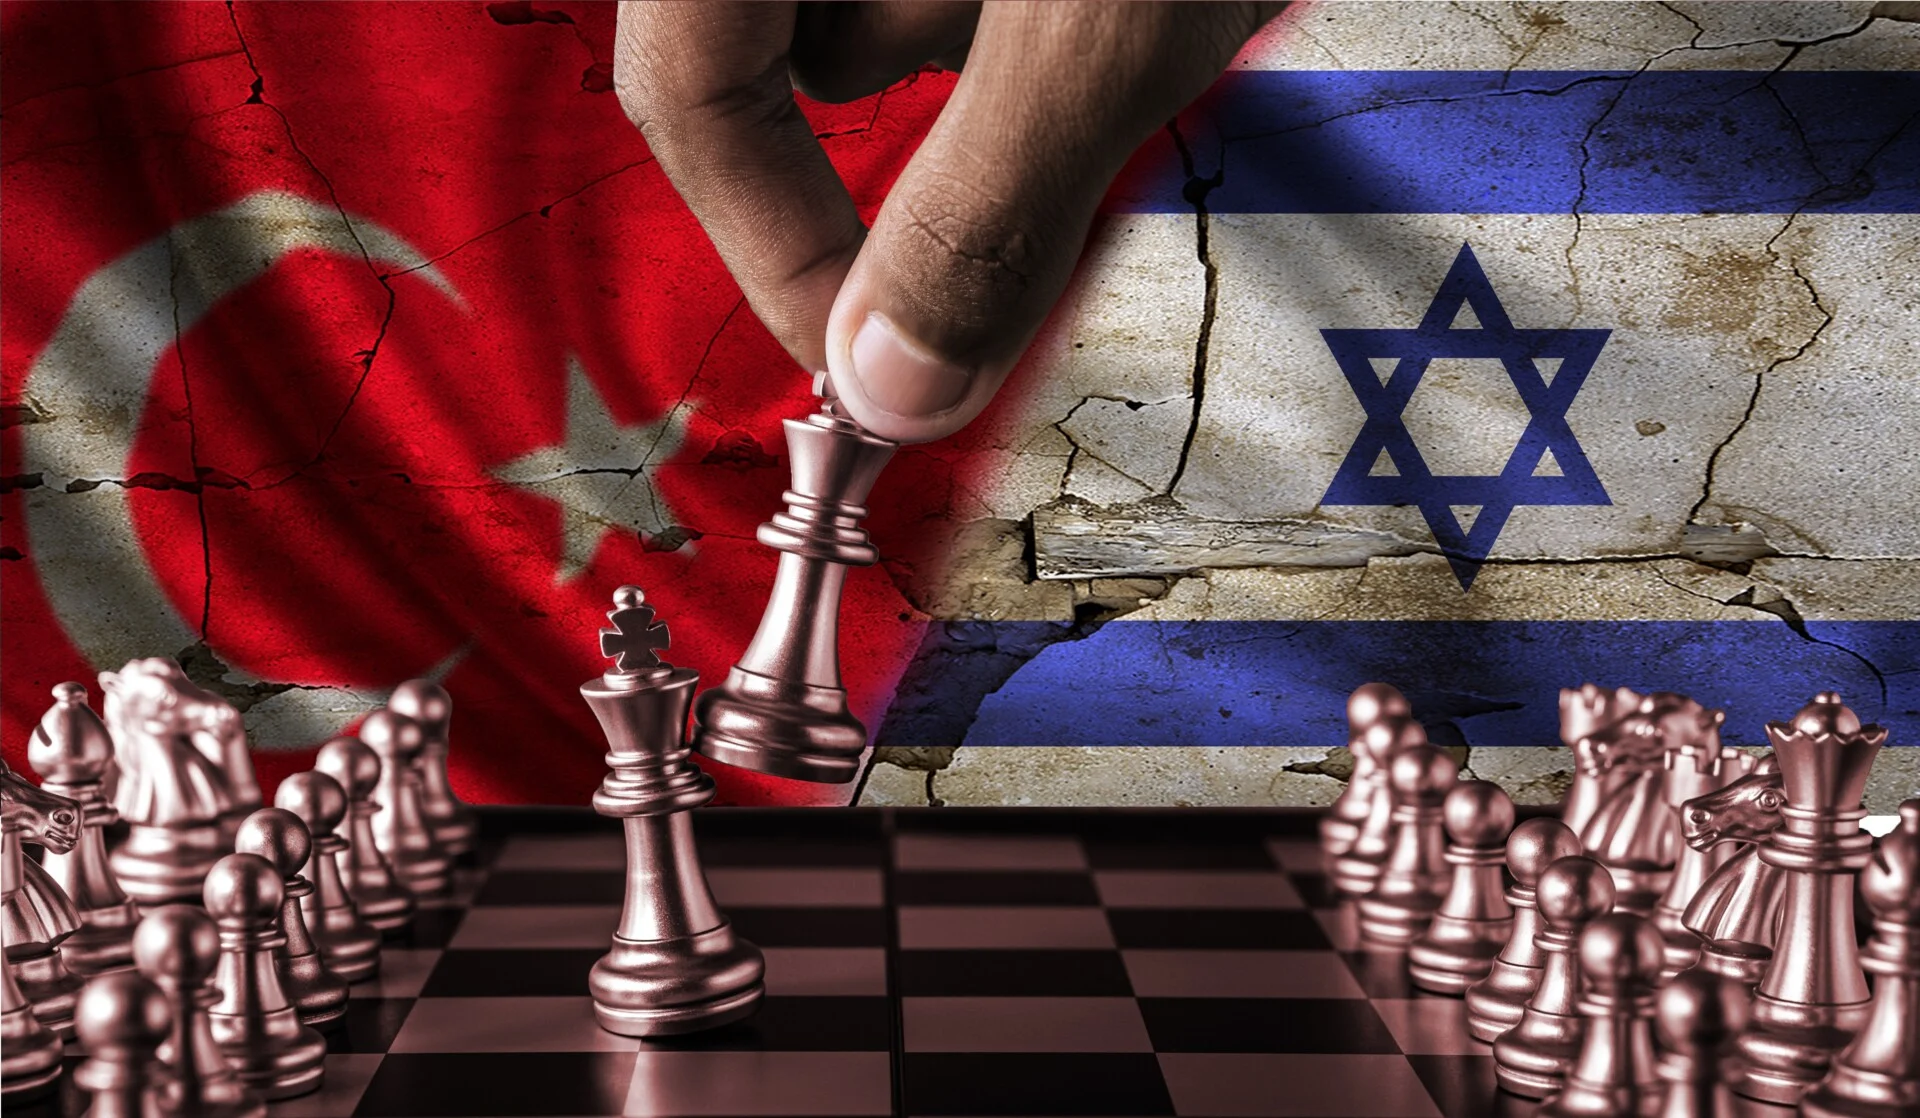 Νέα κρίση στις σχέσεις Τουρκίας-Ισραήλ: Η Άγκυρα απαγορεύει όλες τις εμπορικές σχέσεις με το Ισραήλ – Σφοδρή αντίδραση του Τελ Αβίβ